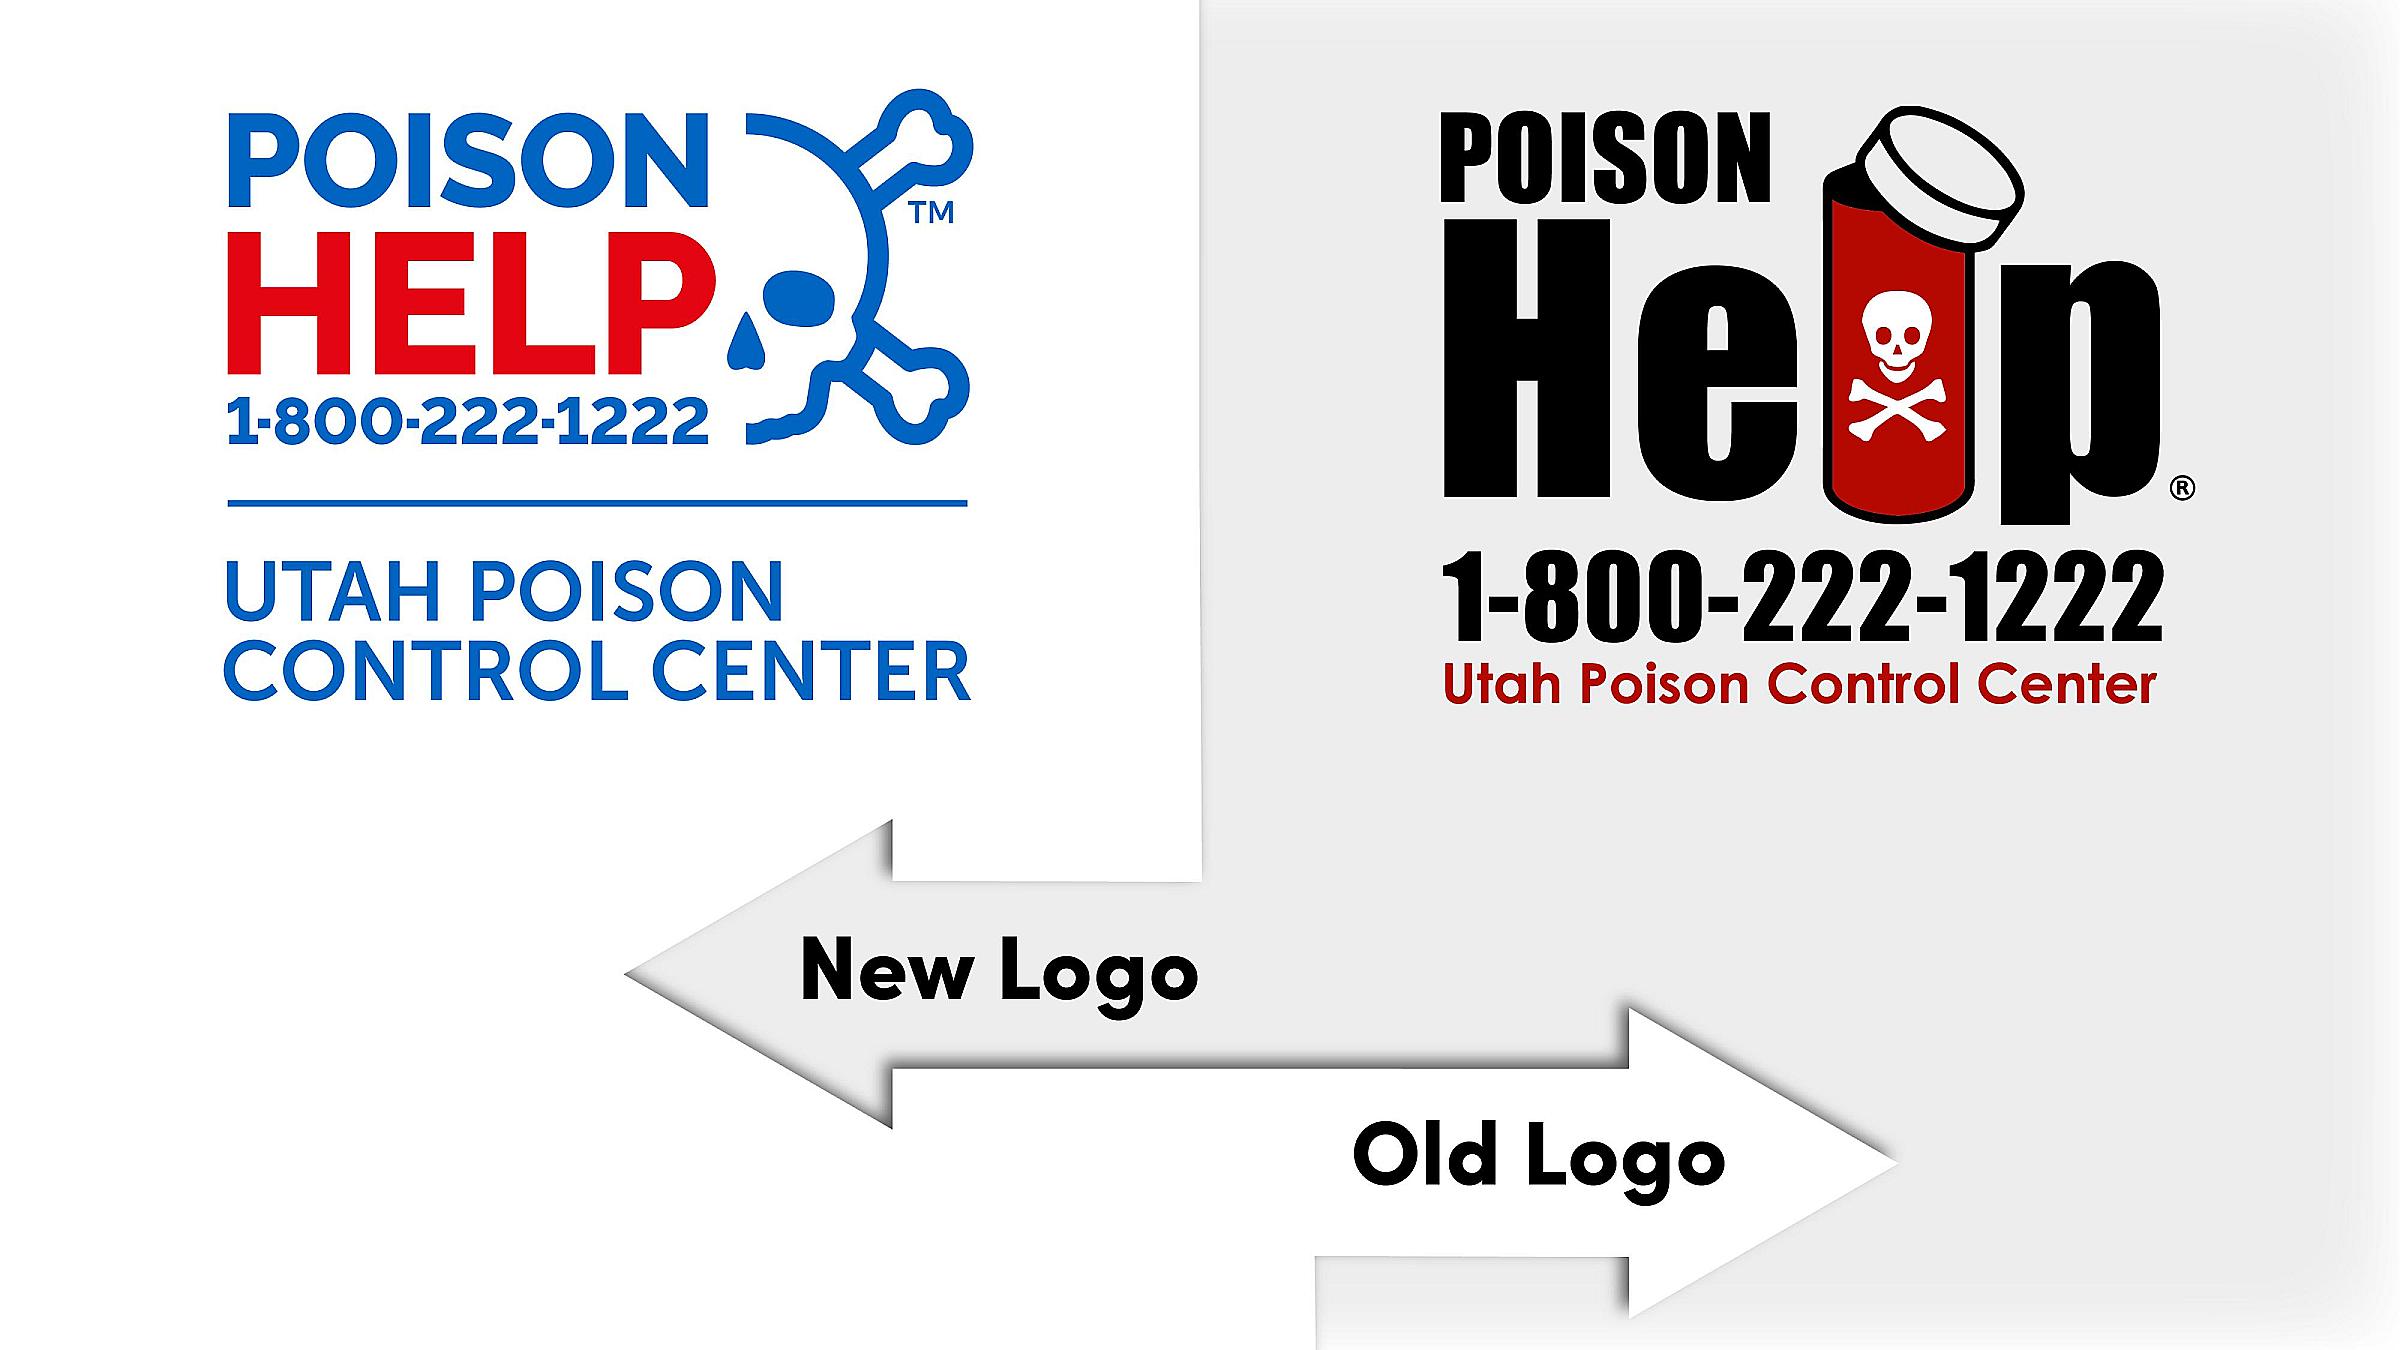 Old versus new Help logo